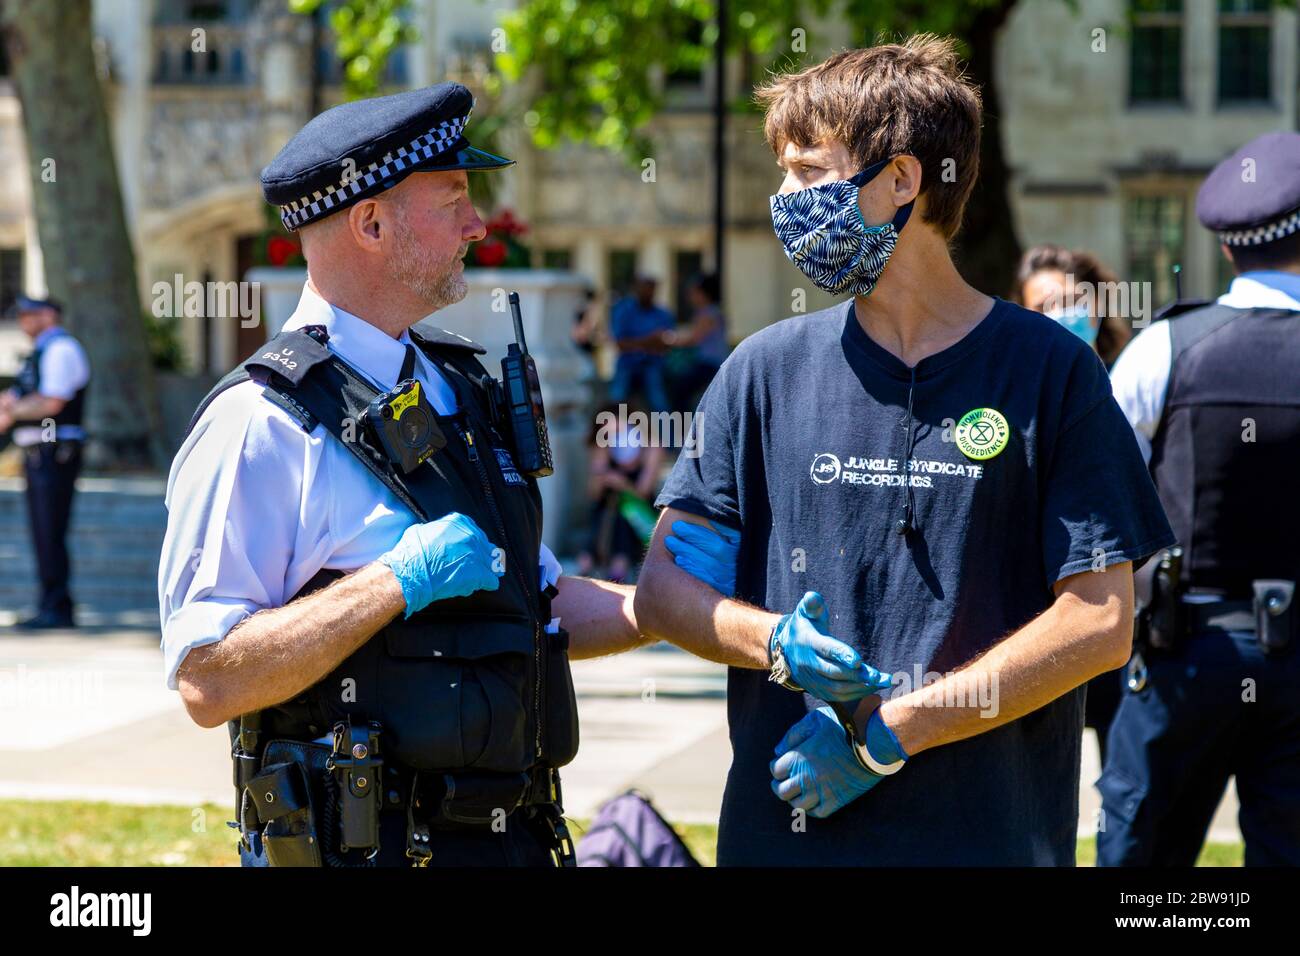 30 maggio 2020 Londra, UK - la ribellione estinguente ha tacito a Westminster la protesta socialmente distanziata contro i cambiamenti climatici, i manifestanti sono stati multati e portati via dalla polizia per aver violato le norme del coronavirus, l'uomo in maschera manomessa, arrestato e tenuto da ufficiali di polizia Foto Stock